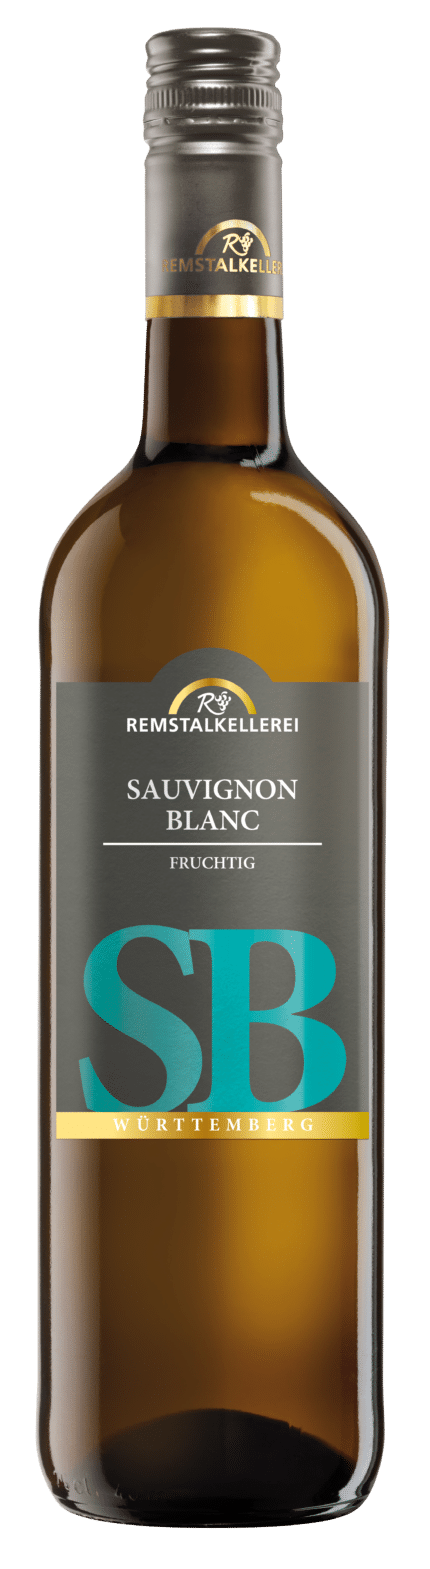 2017 Sauvignon Blanc fruchtig (2017)_Remstalkellerei eG